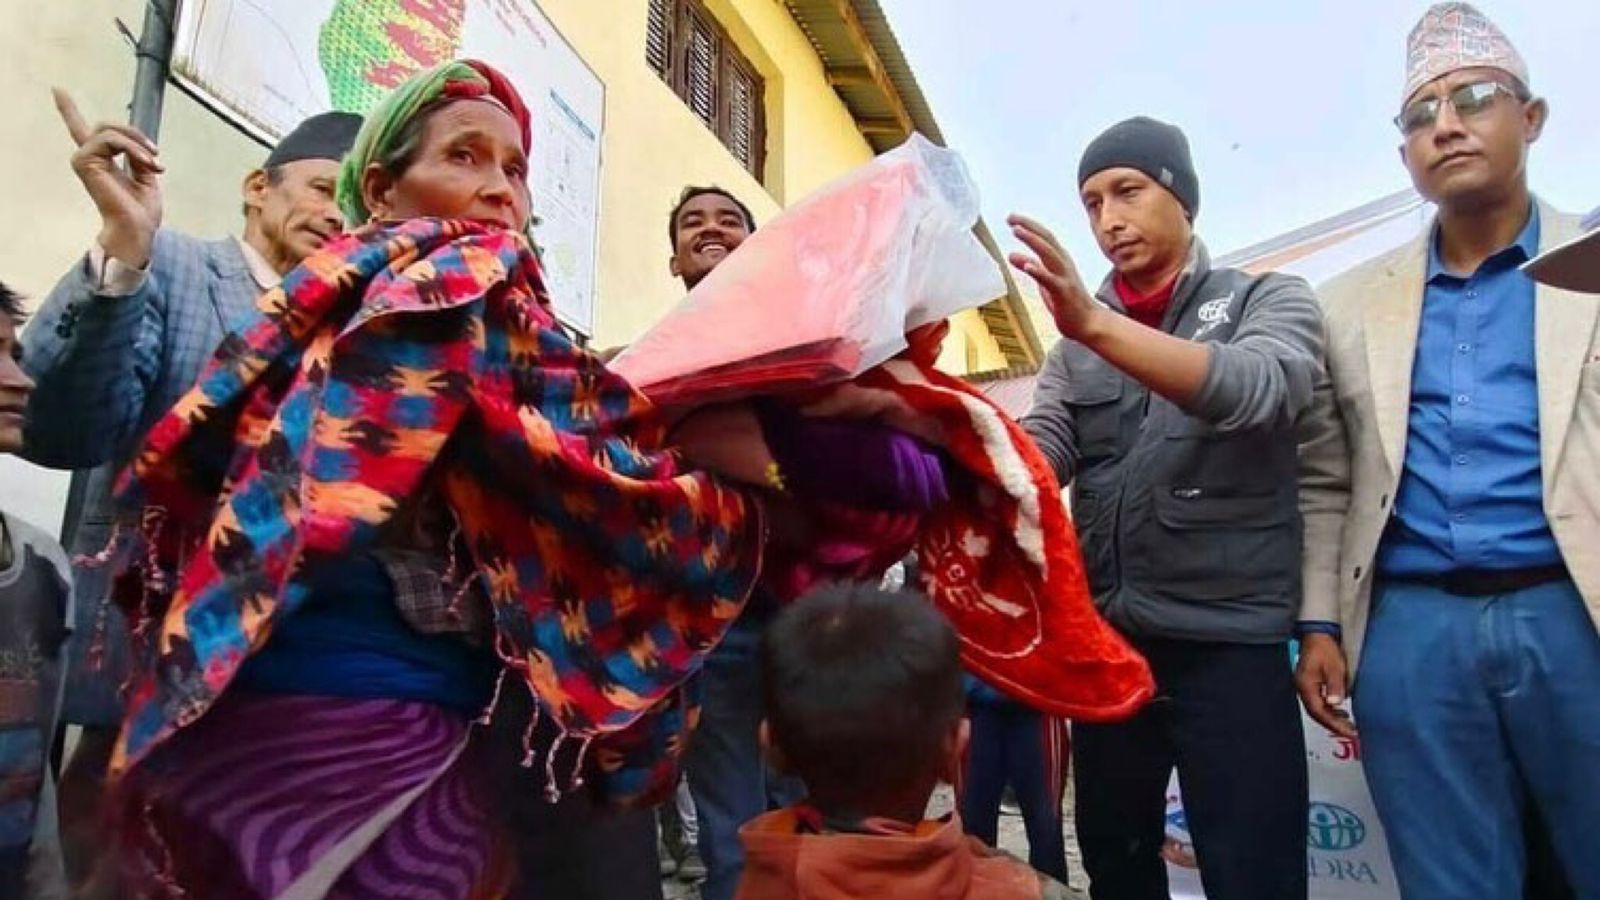 Missionários ajudam sobreviventes de terremoto no Nepal: “As pessoas estão com medo”